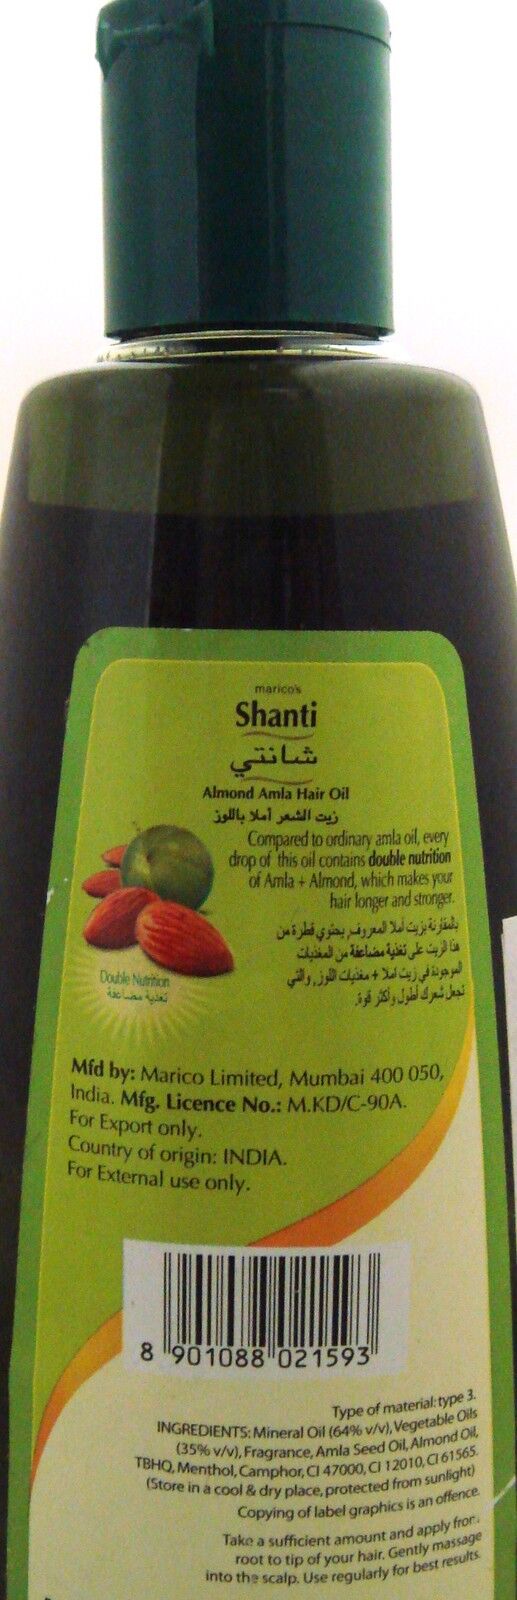 Maricos's Shanti Almond Amla Hair Oil Double Nutrition 200ml | Hair Oil for Strong and Long Hair